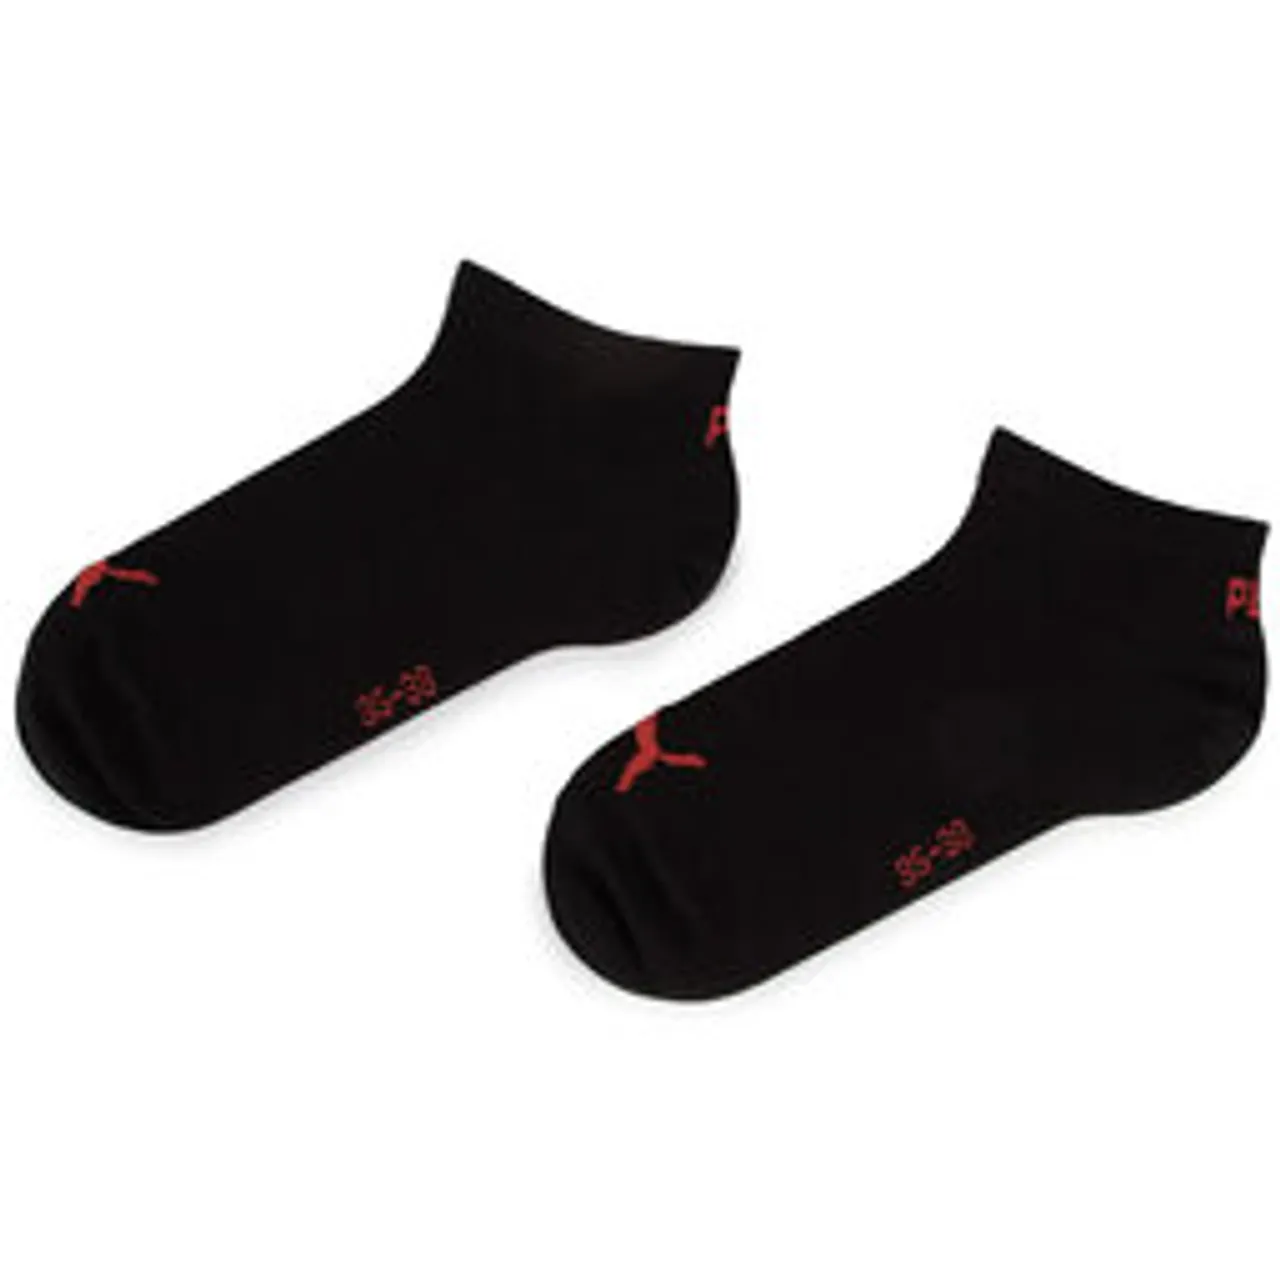 3er-Set niedrige Unisex-Socken Puma 261080001 Black/Red 232